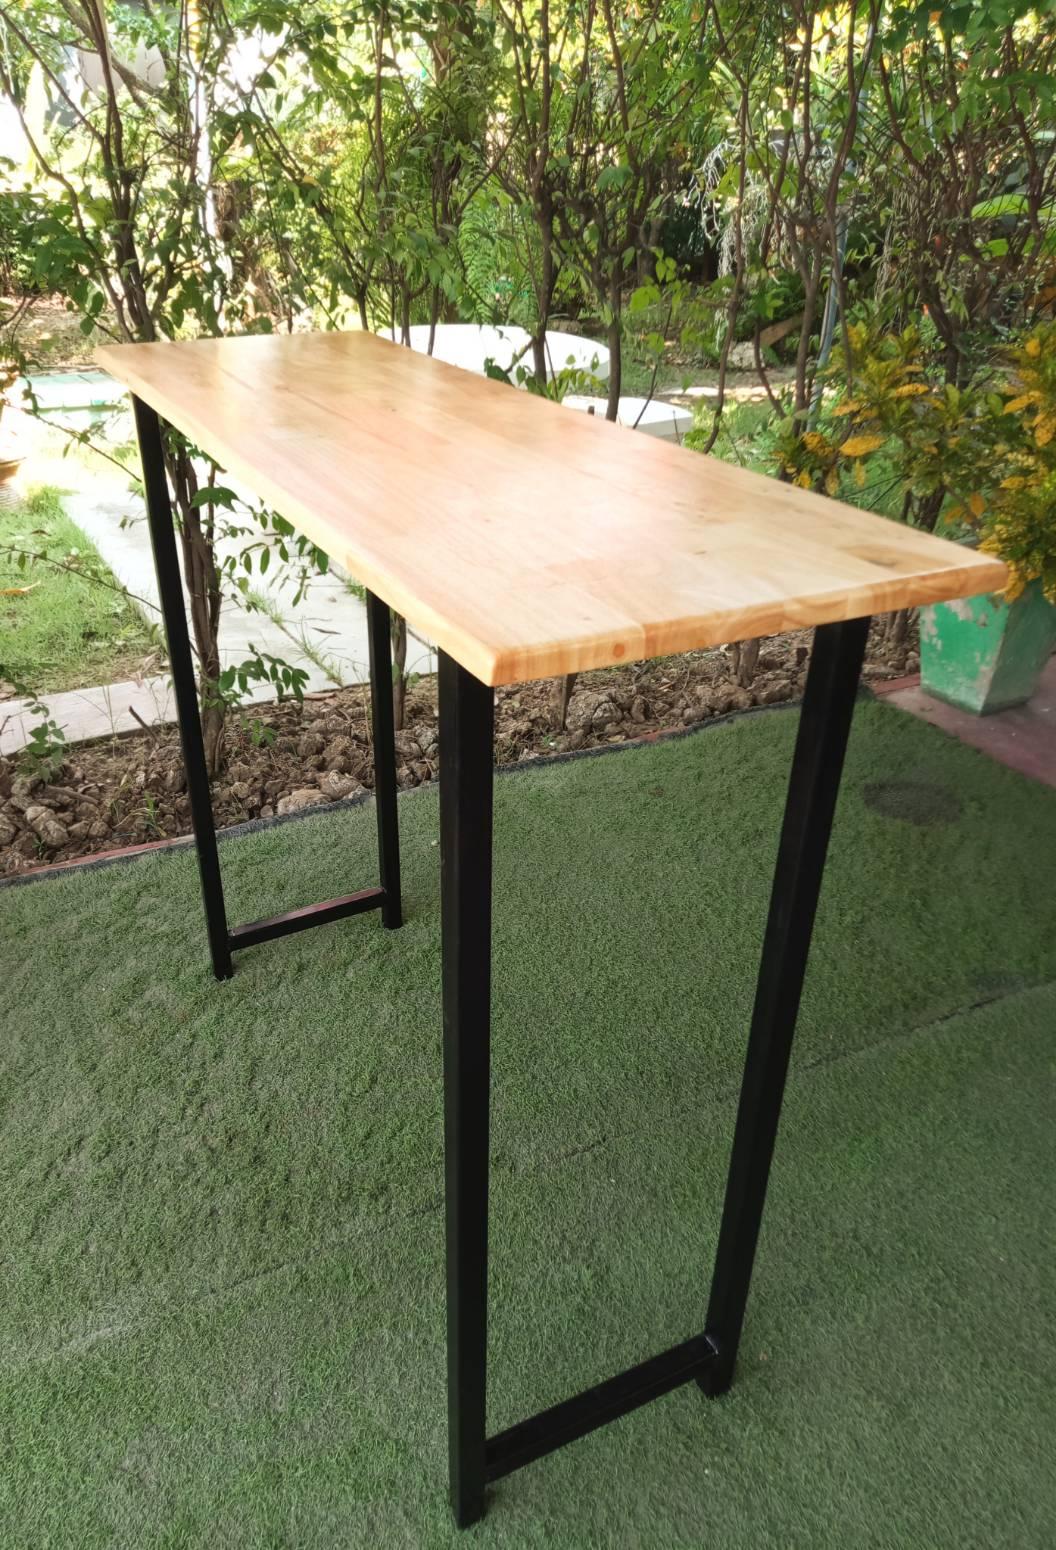 โต๊ะบาร์ไม้ยางพารา ขาเหล็ก สไตล์ลอฟท์ 40x120x100 ซม. รุ่น TM10040-0001